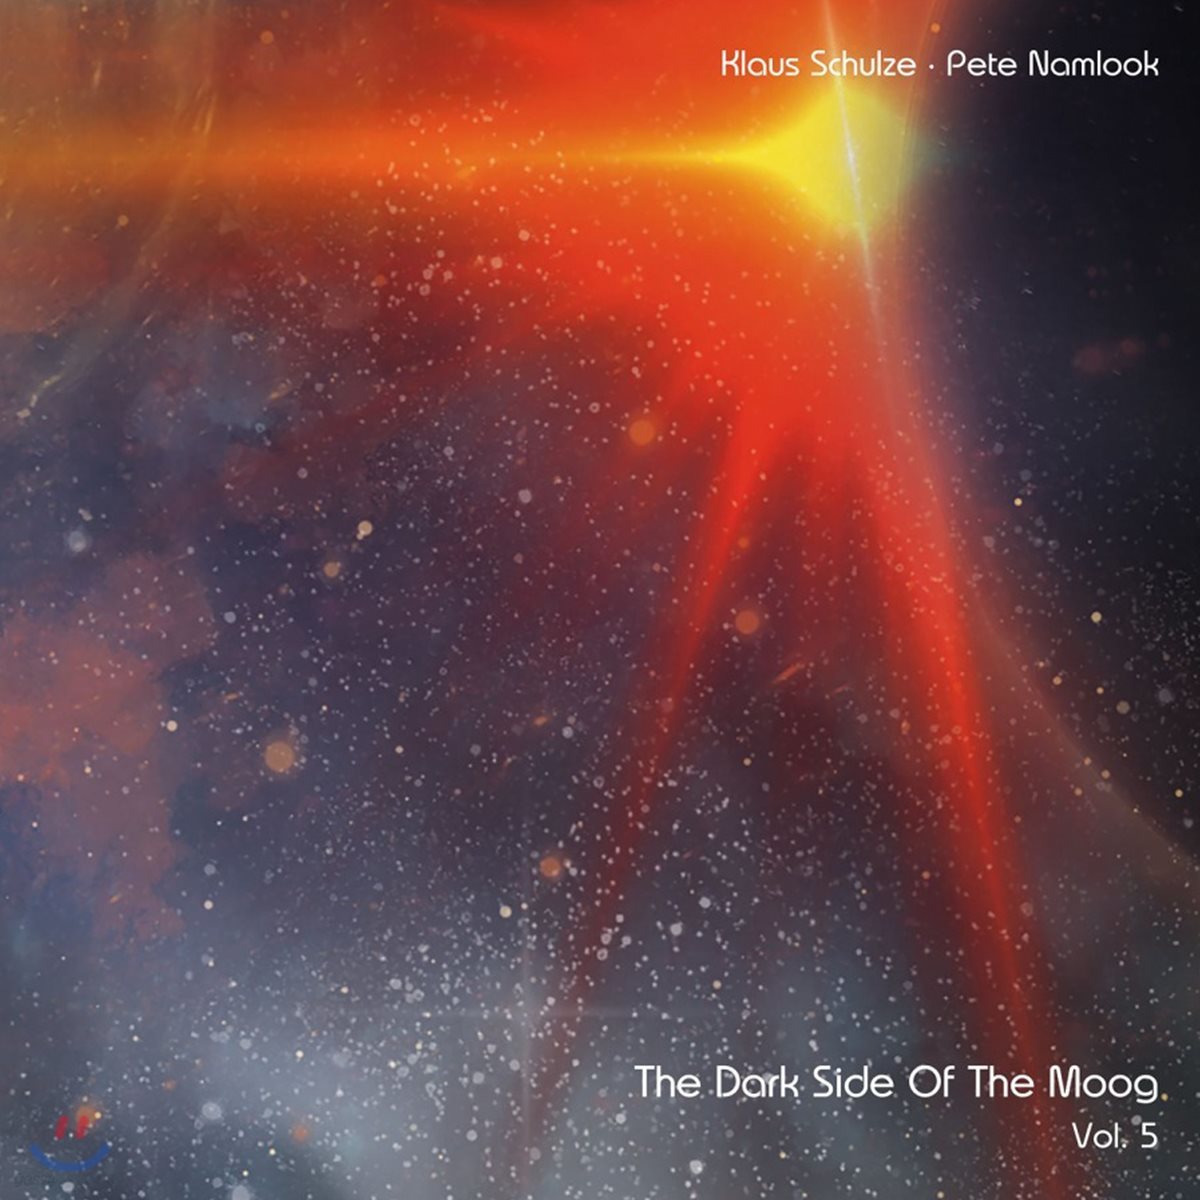 Klaus Schulze & Pete Namlook (클라우스 슐체 & 페테 남루크) - Dark Side Of The Moog Vol. 5 (Psychedelic Brunch) [2LP]